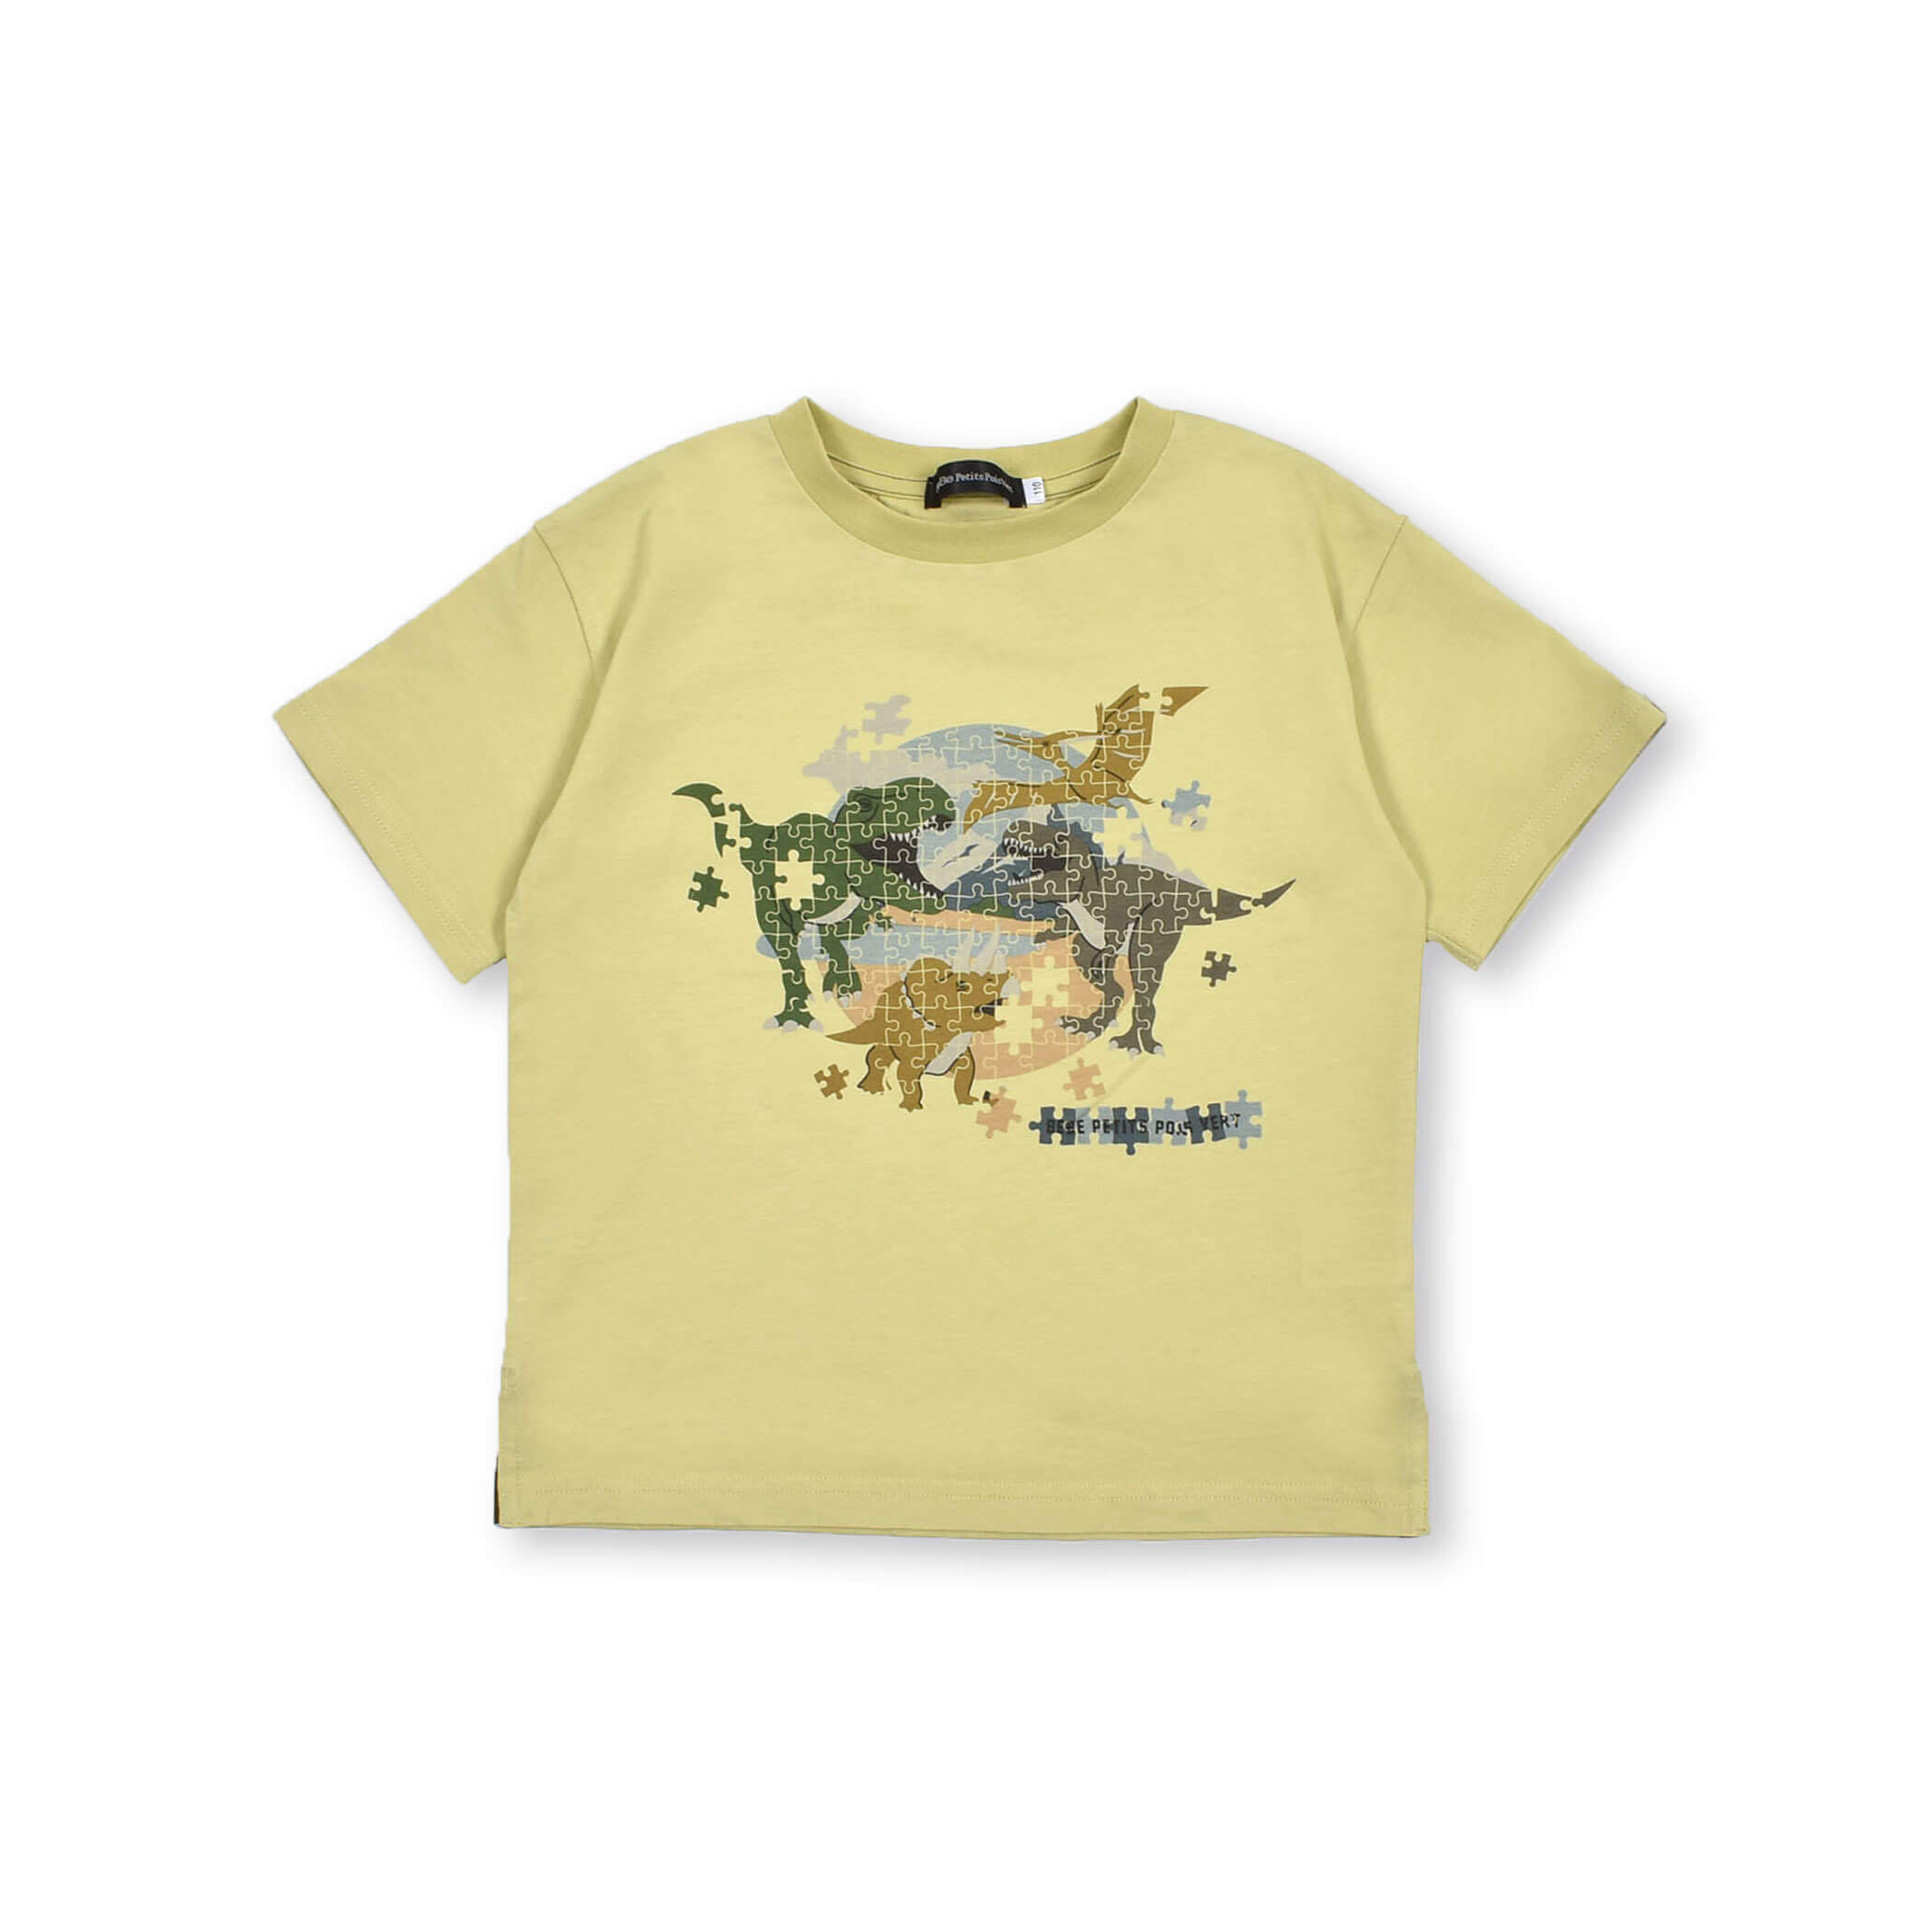 接触冷感】恐竜いっぱいパズルプリントTシャツ(95~150cm)[品番